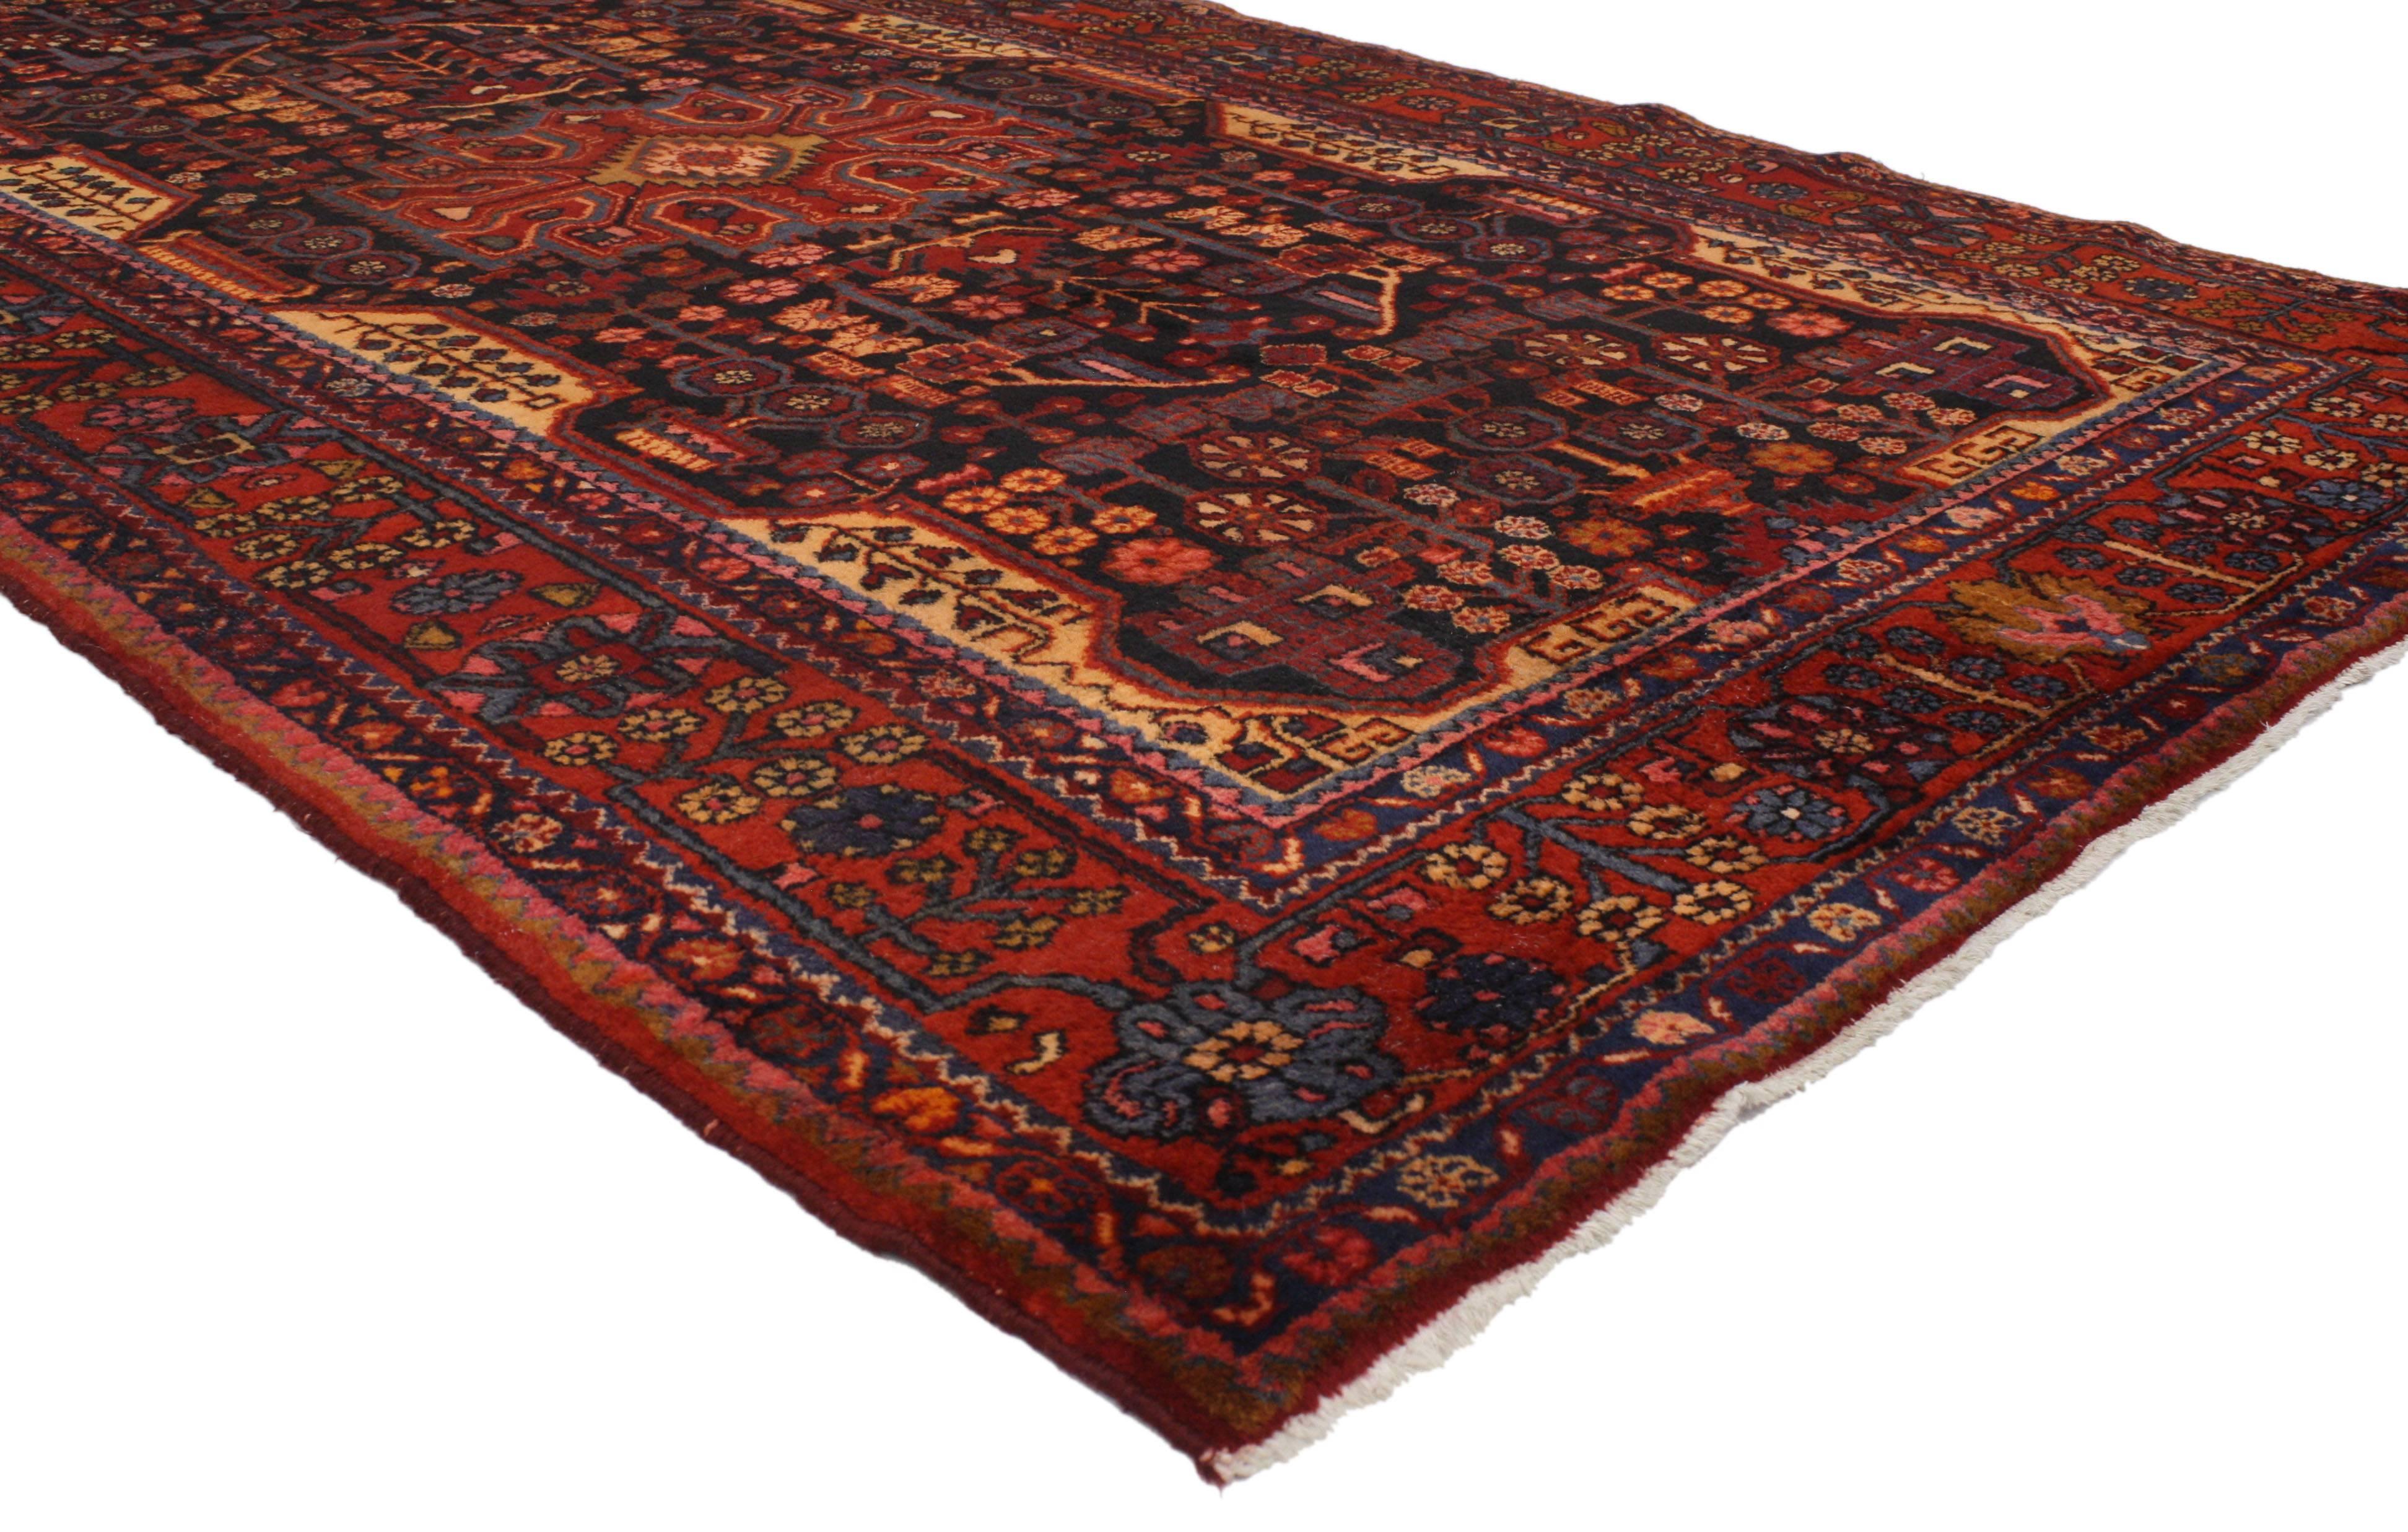 Dieser antike persische Hamadan-Galerie-Teppich im modernen Tribal-Stil ist charaktervoll und imposant. Er zeigt ein extravagantes geometrisches Muster, das in wunderschönen Schattierungen von Mitternachtsschwarz, Marineblau, Orange, Rot, Braun,